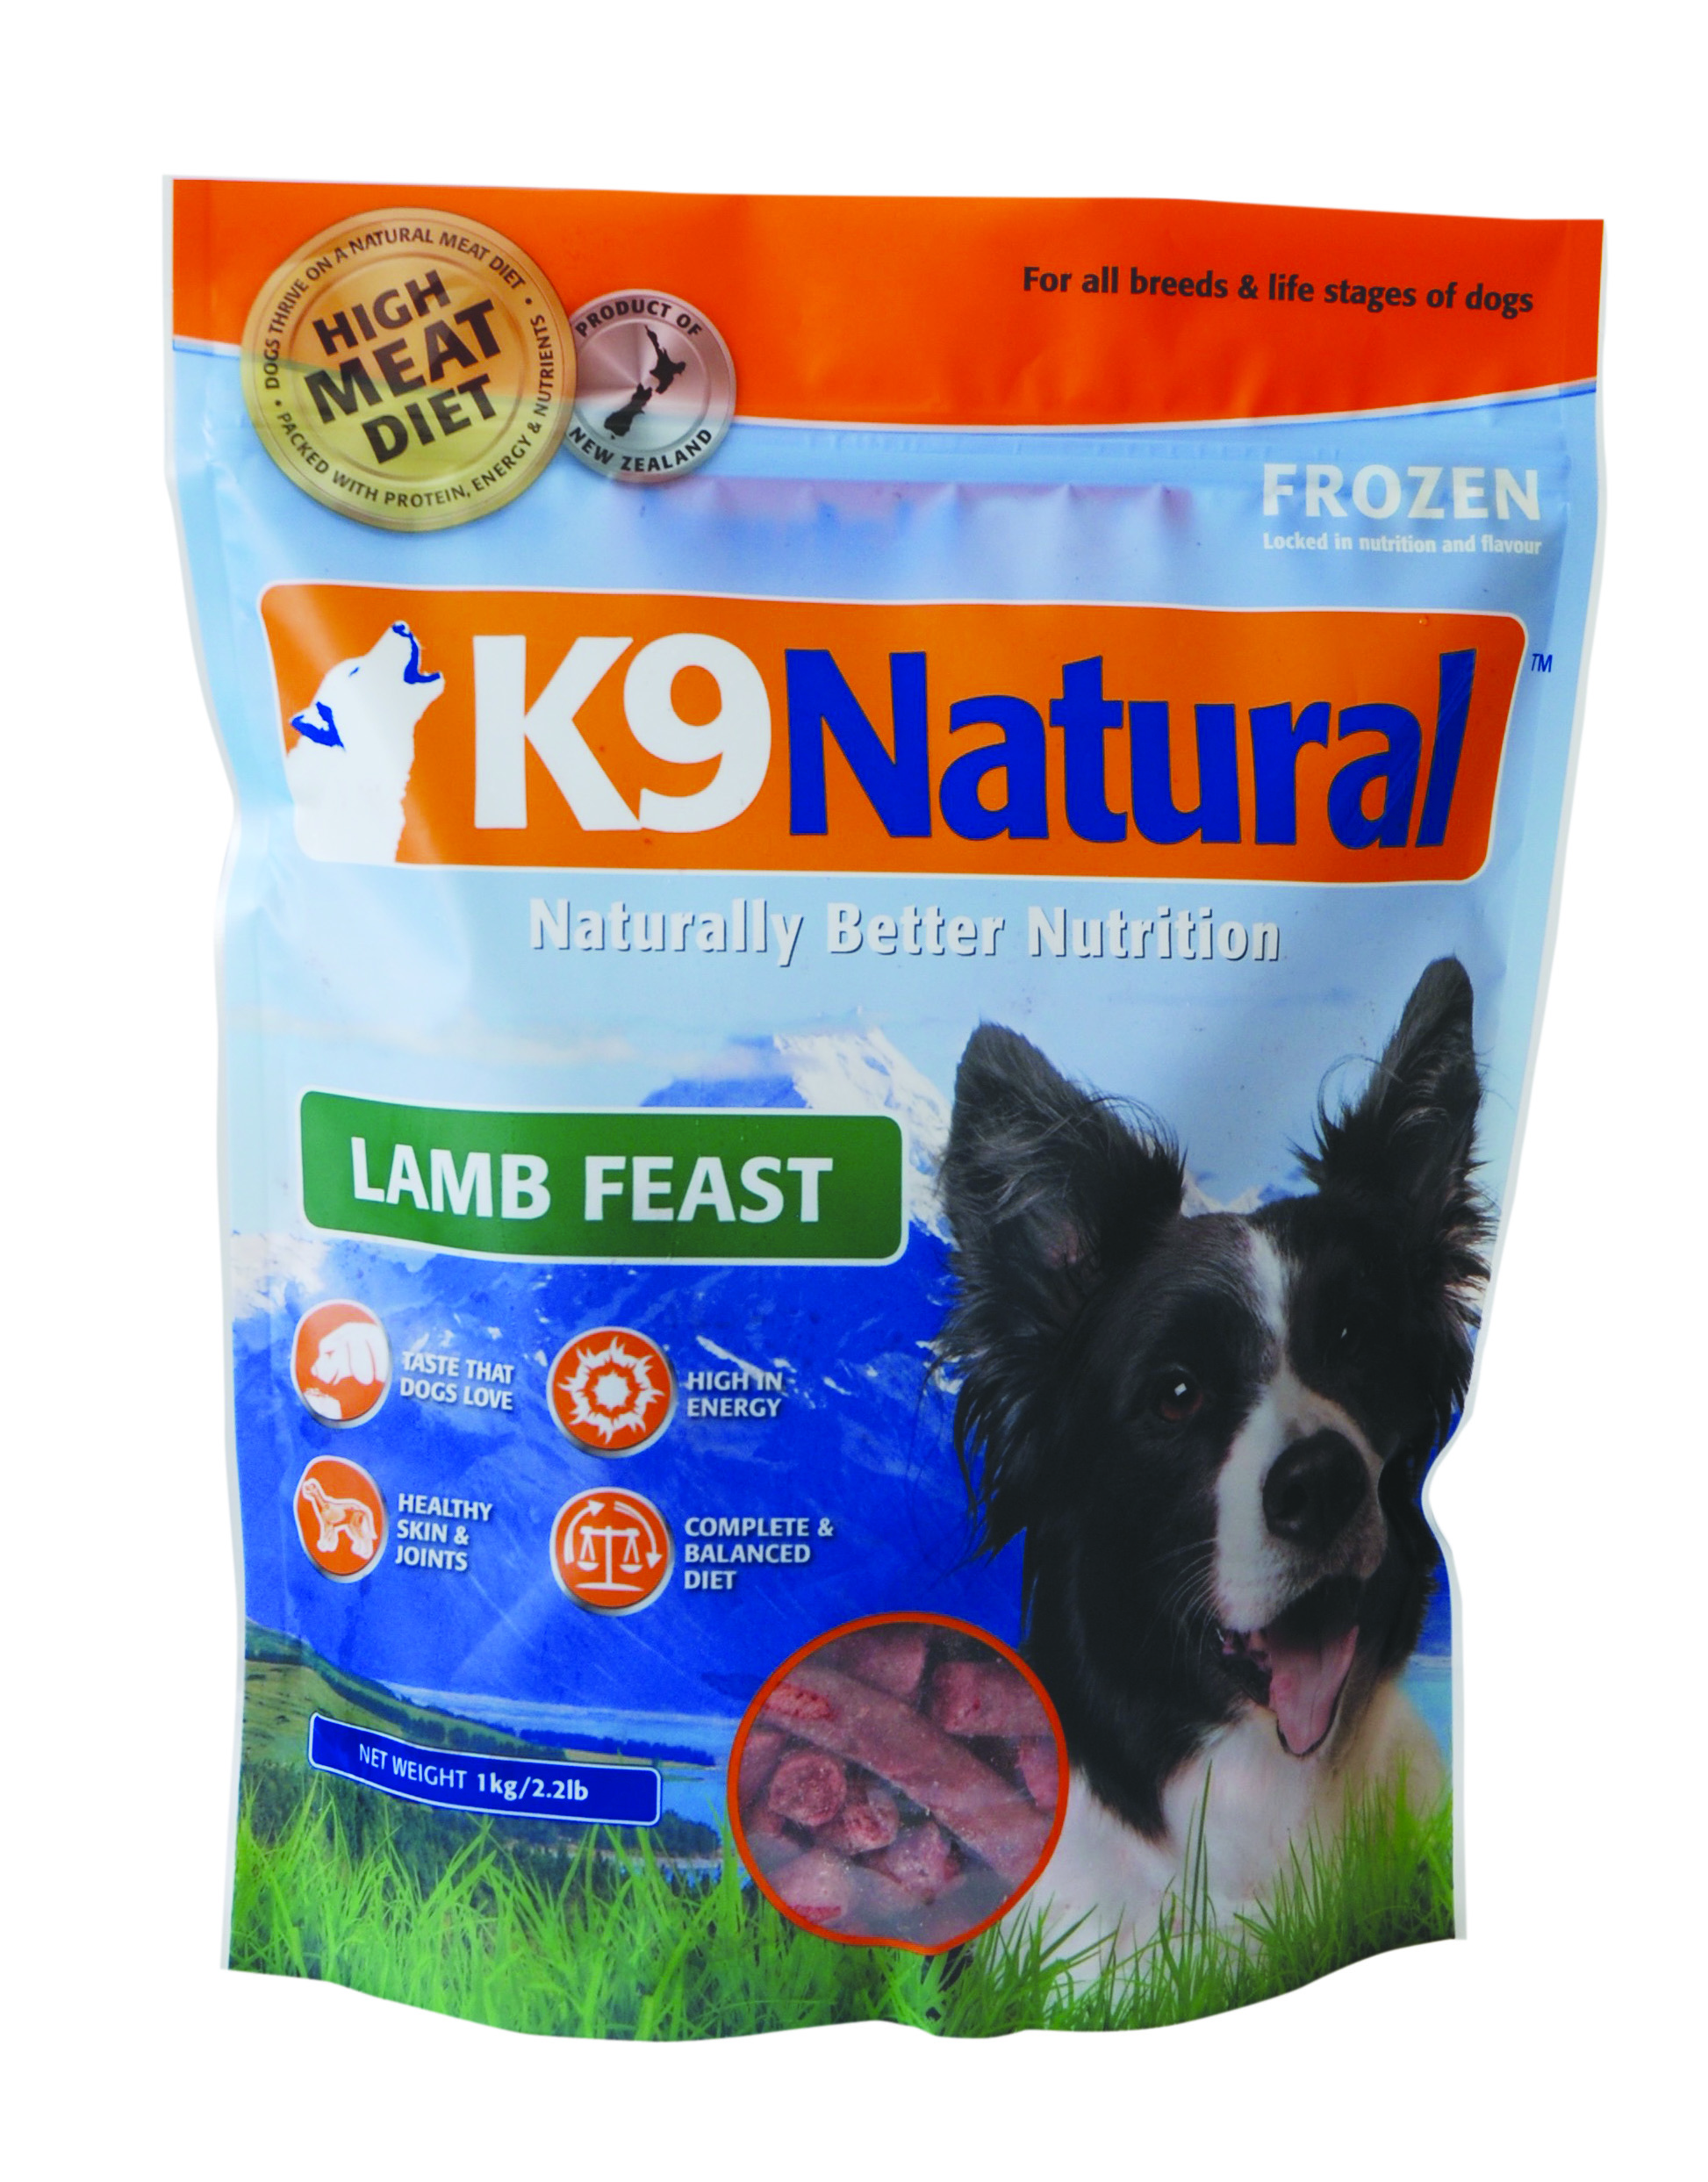 紐西蘭K9 Natural (冷凍)鮮肉生食餐 90%羊肉
K9 Natural Lamb Feast: Frozen